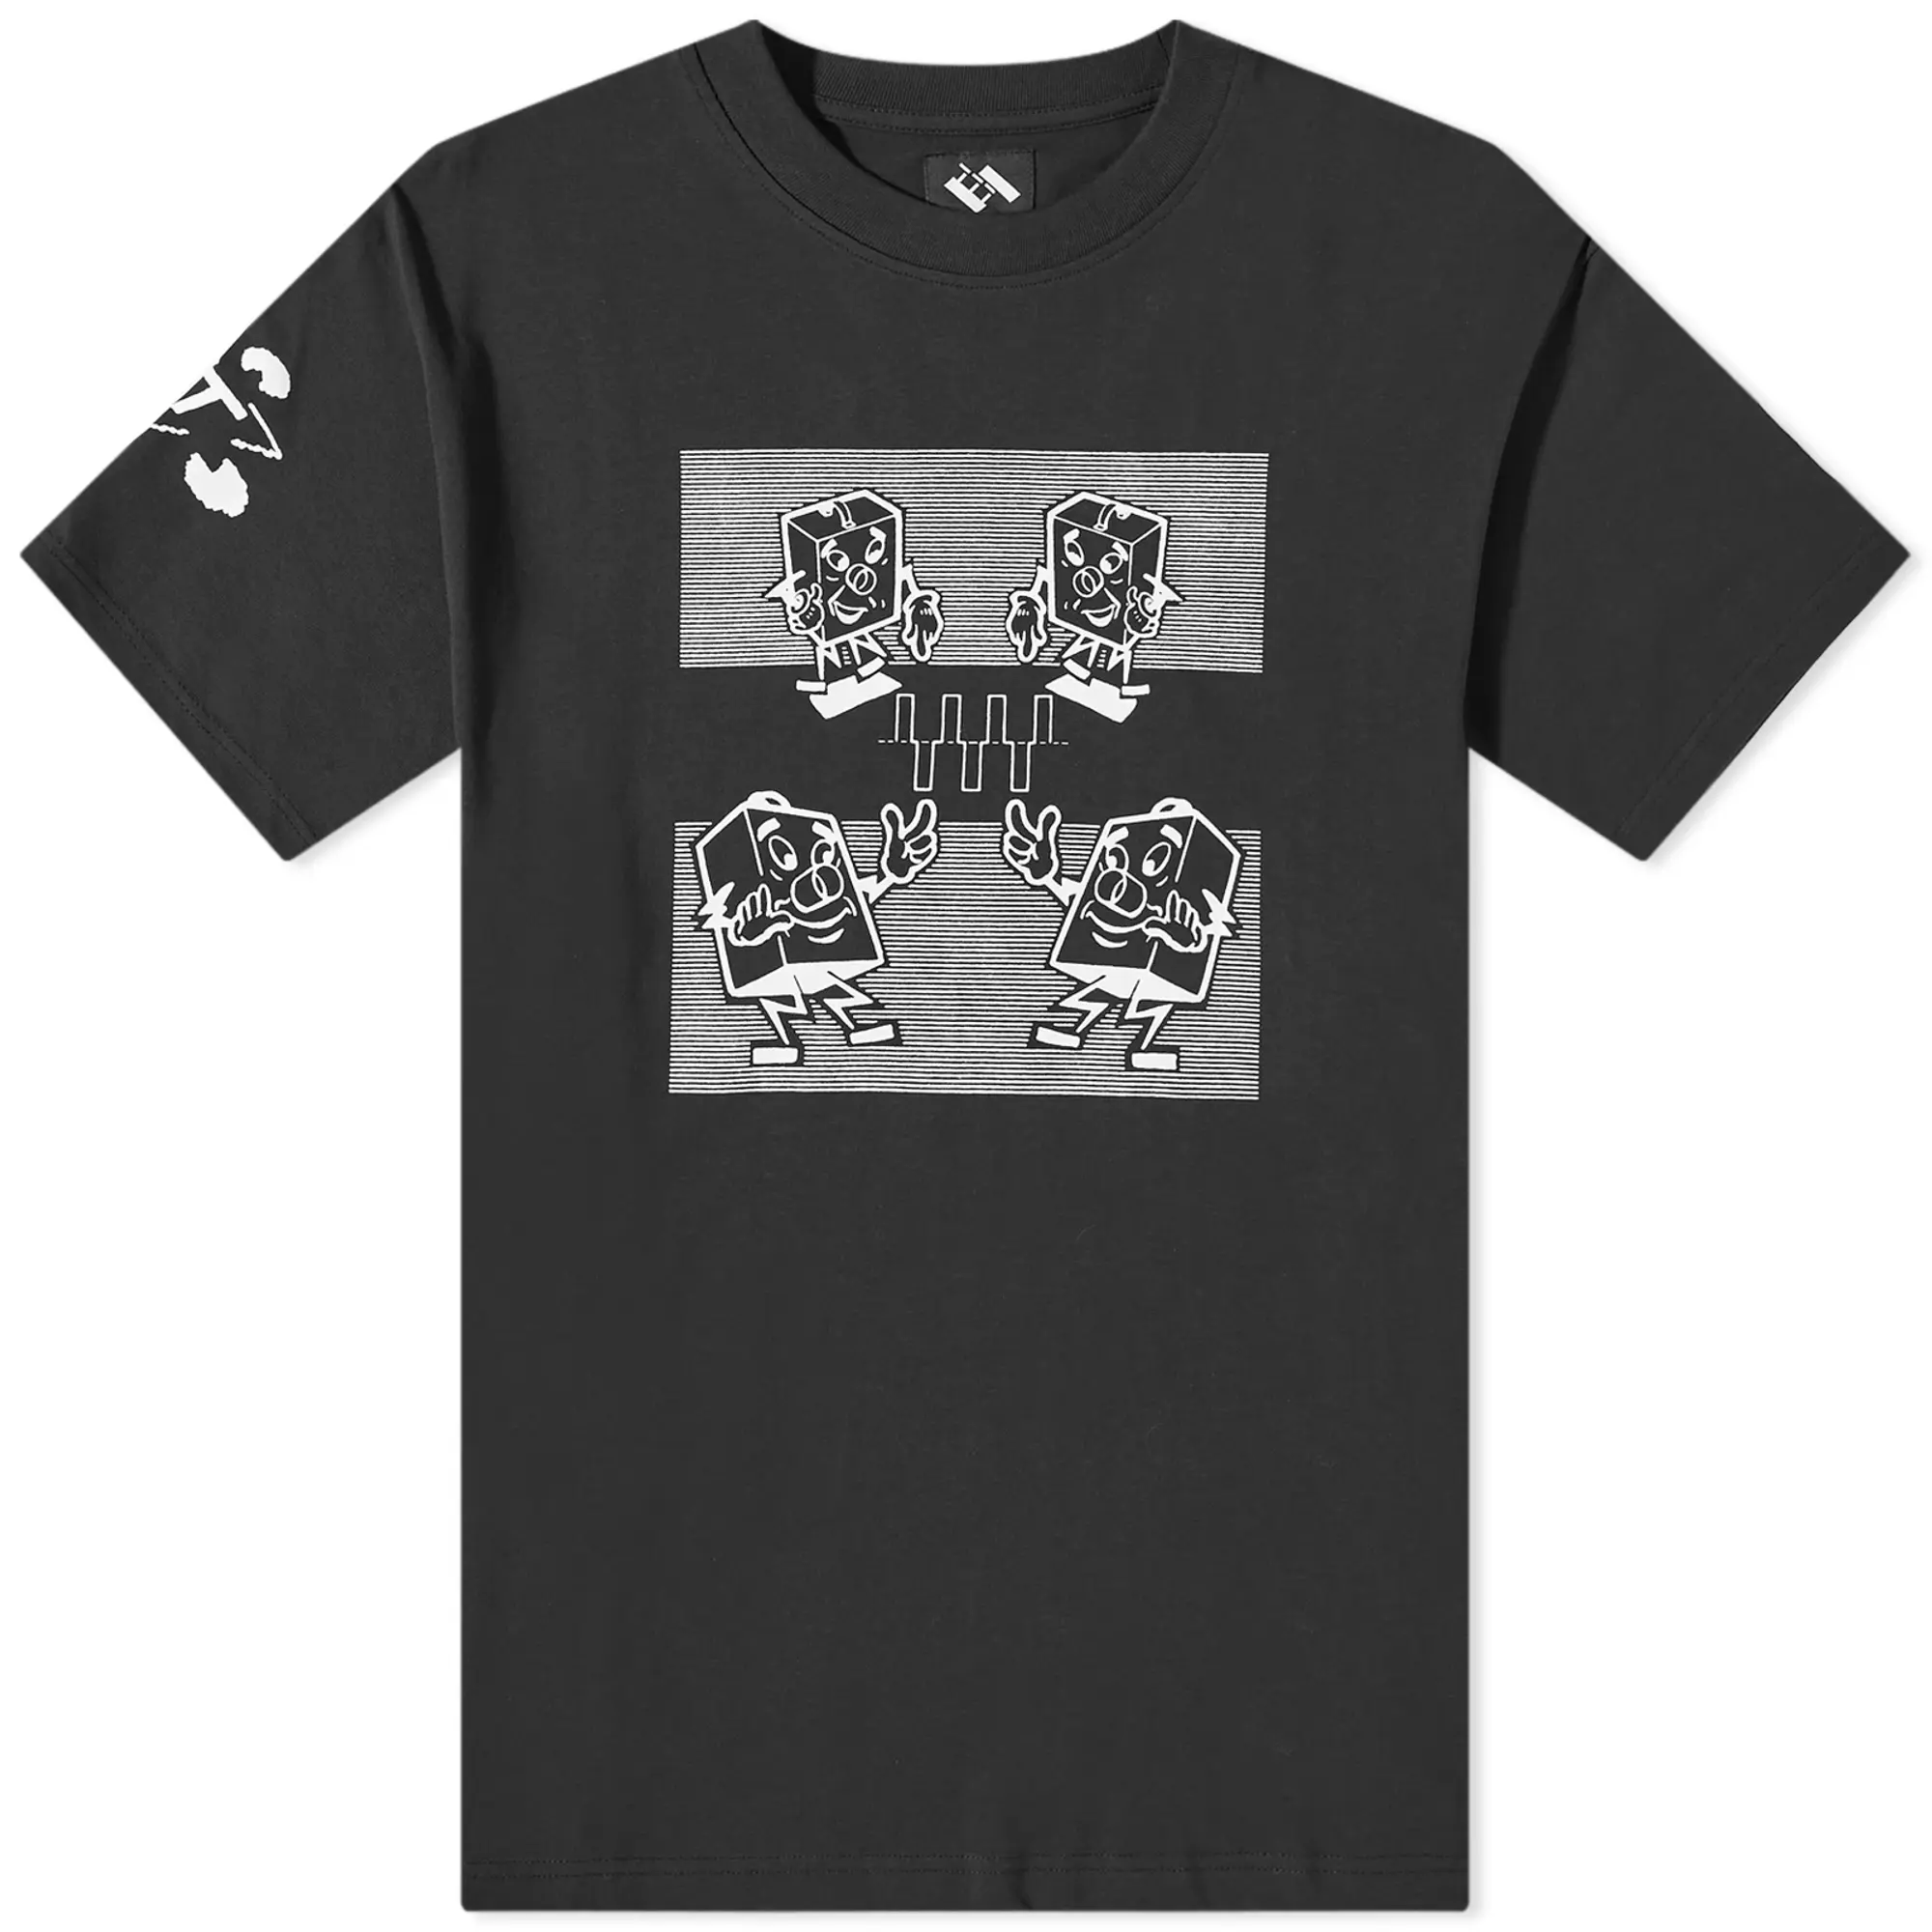 The Trilogy Tapes Men's Electronics T-Shirt Black